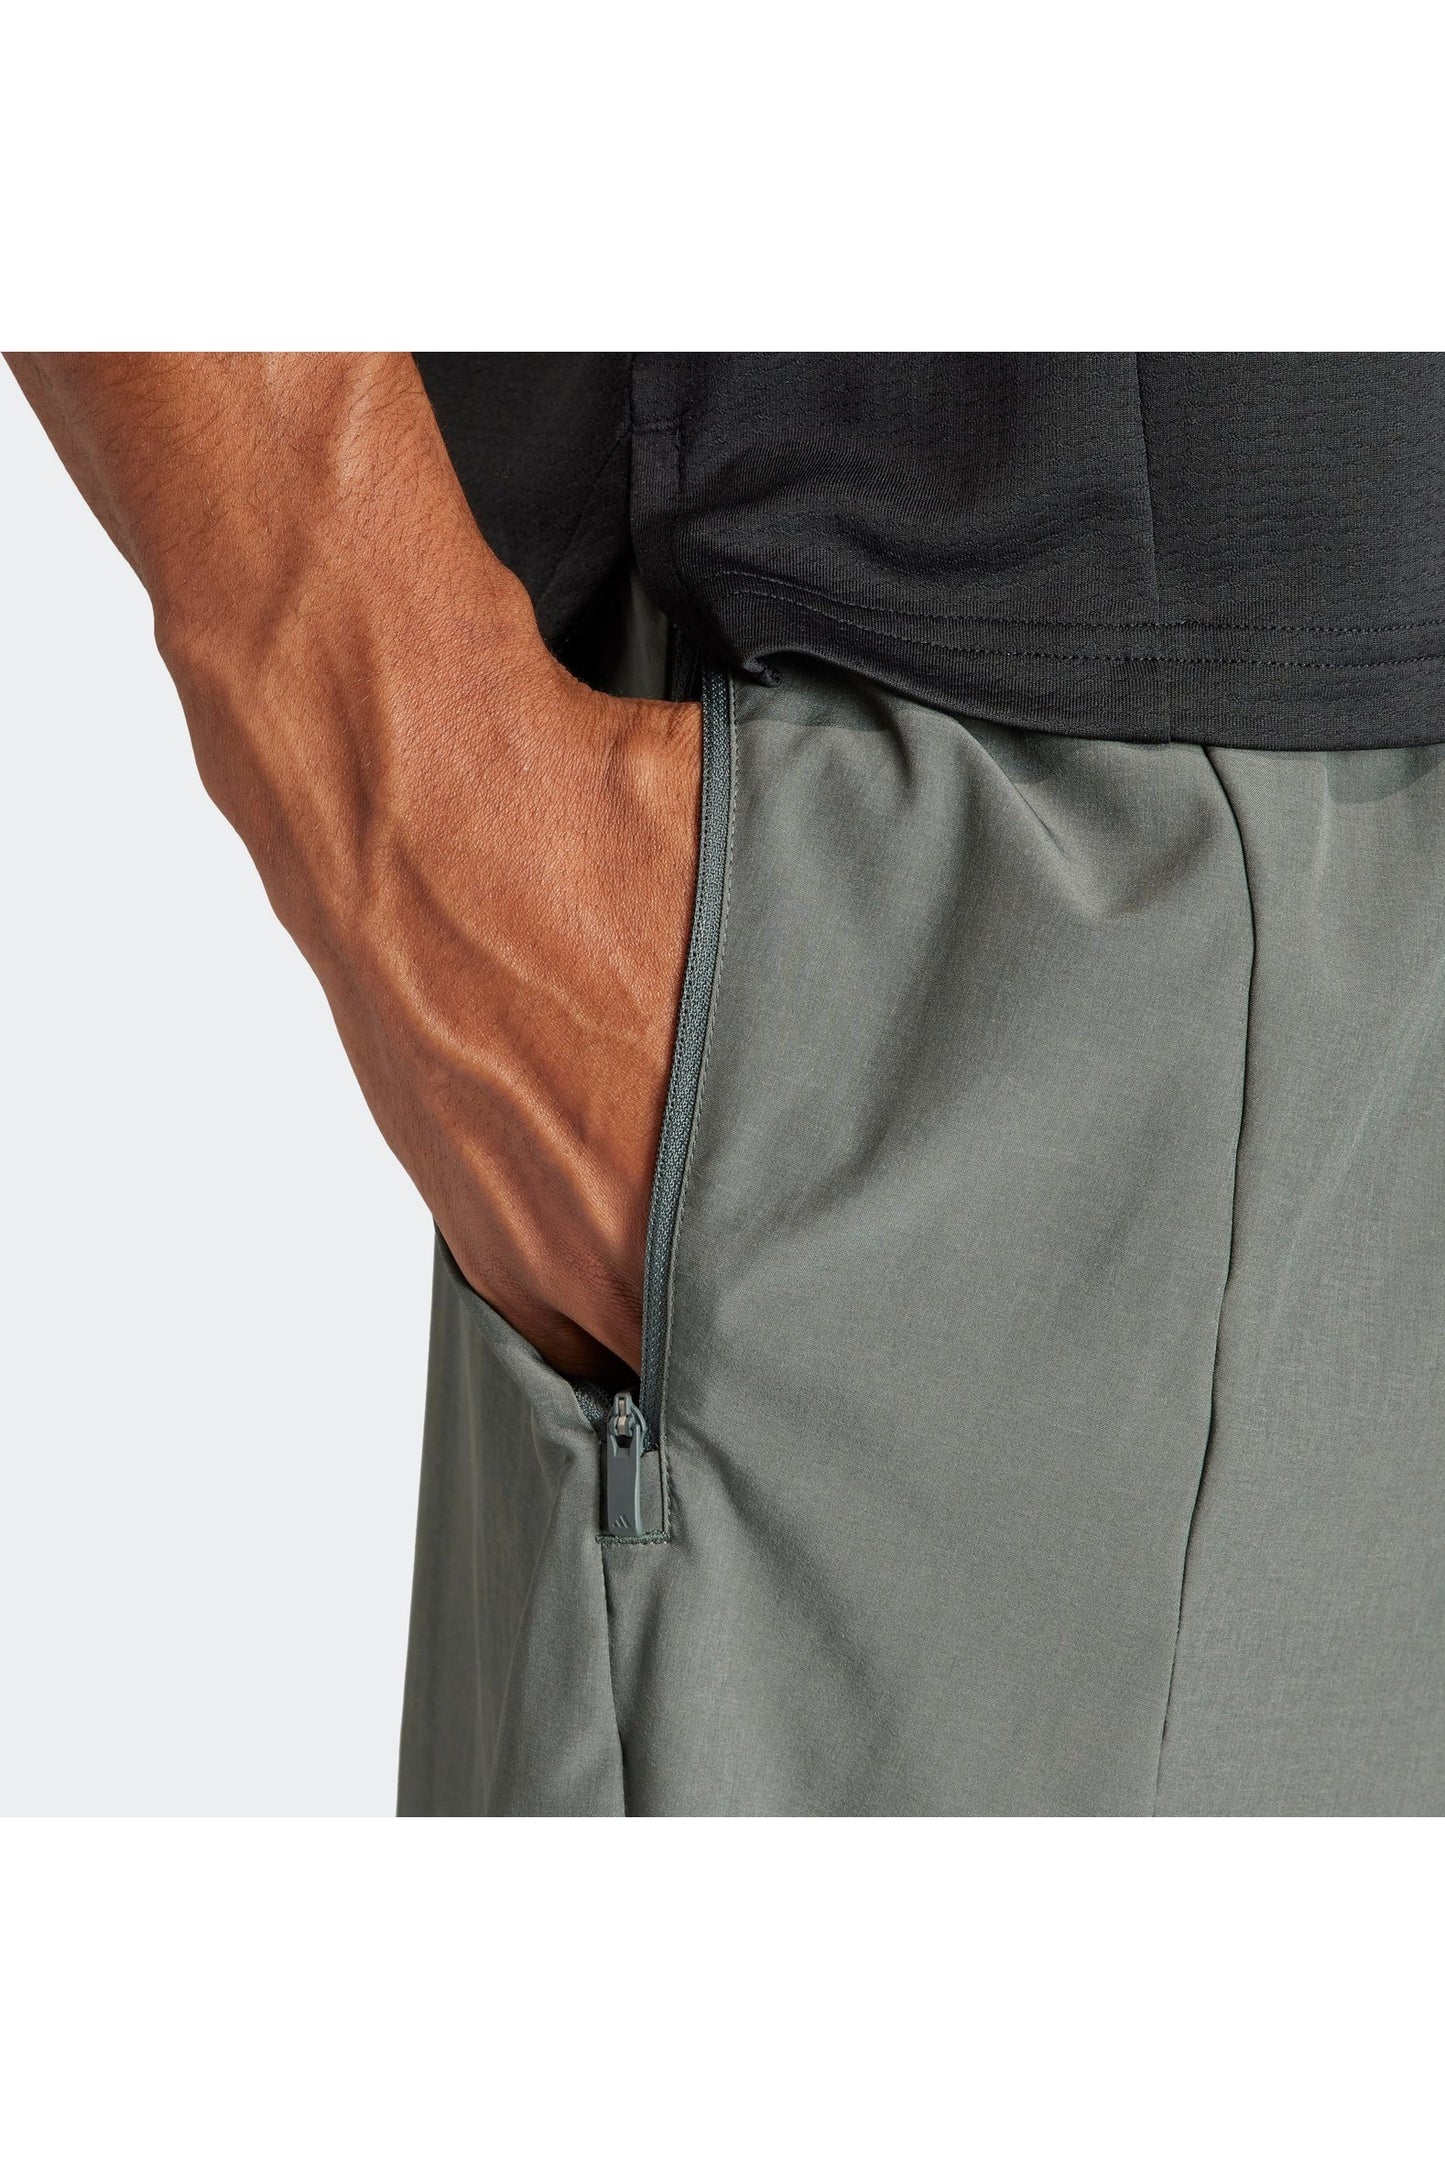 מכנסיים קצרים לגברים DESIGNED FOR TRAINING בצבע אפור ושחור